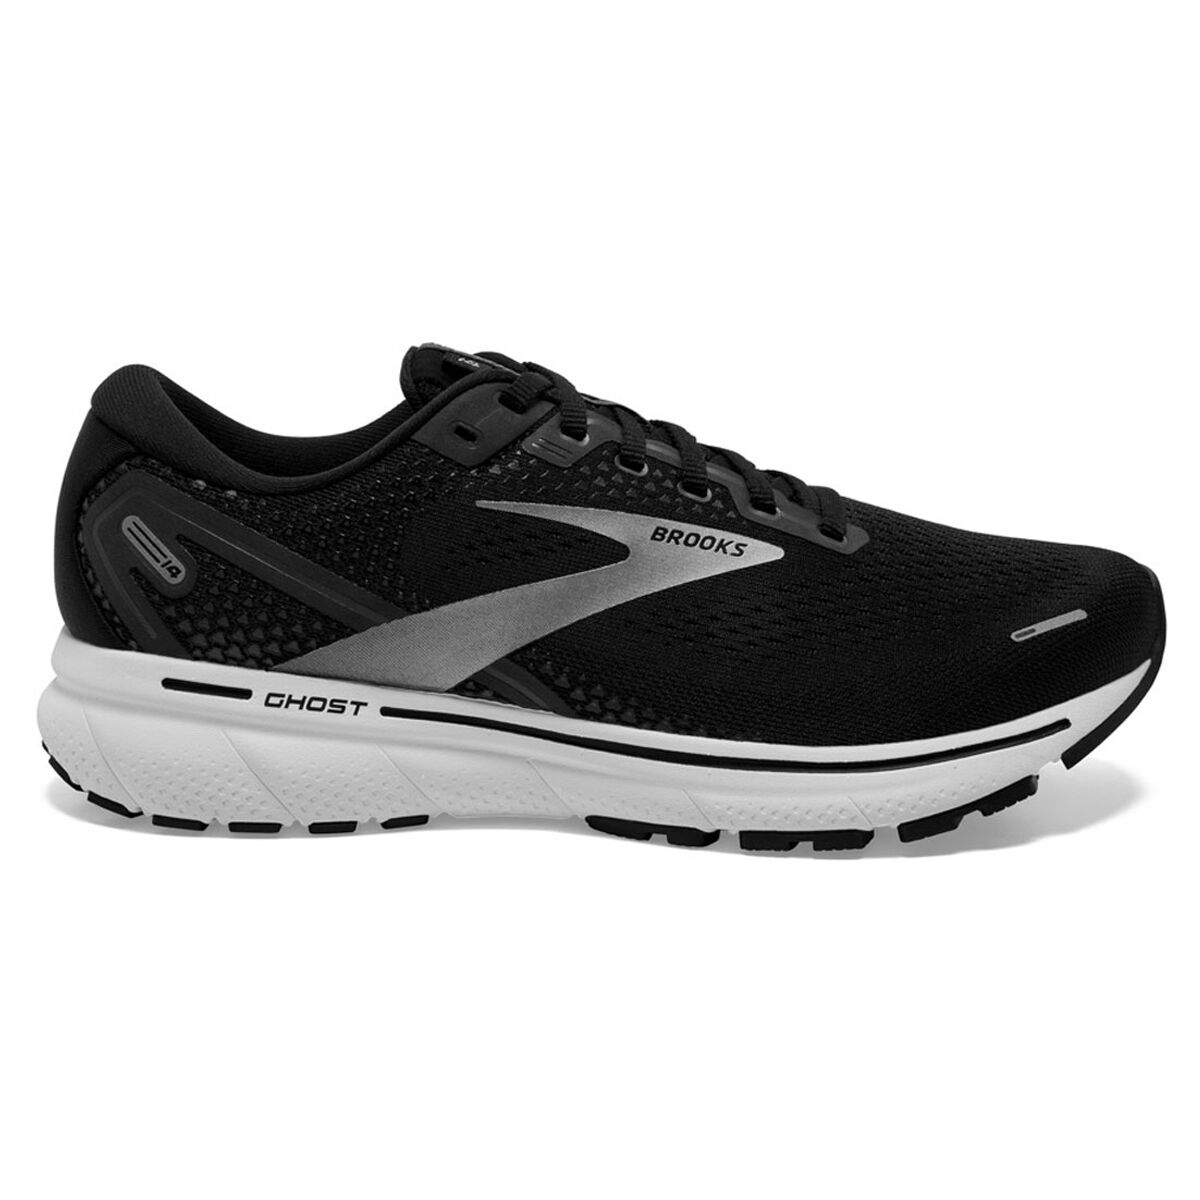 Brooks | Running Shoes for Men & Women | rebel